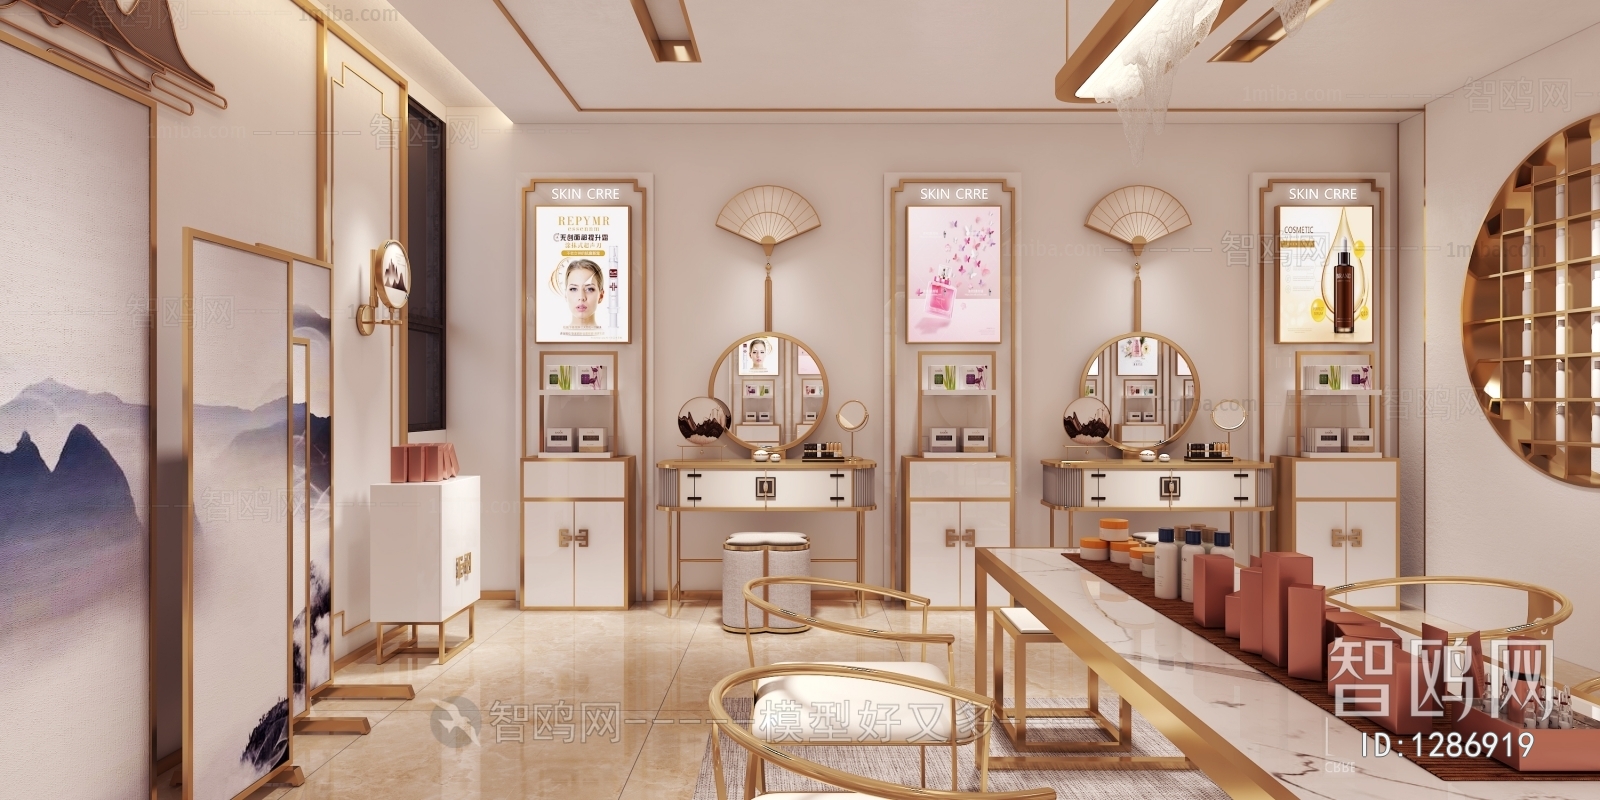 New Chinese Style Beauty Salon